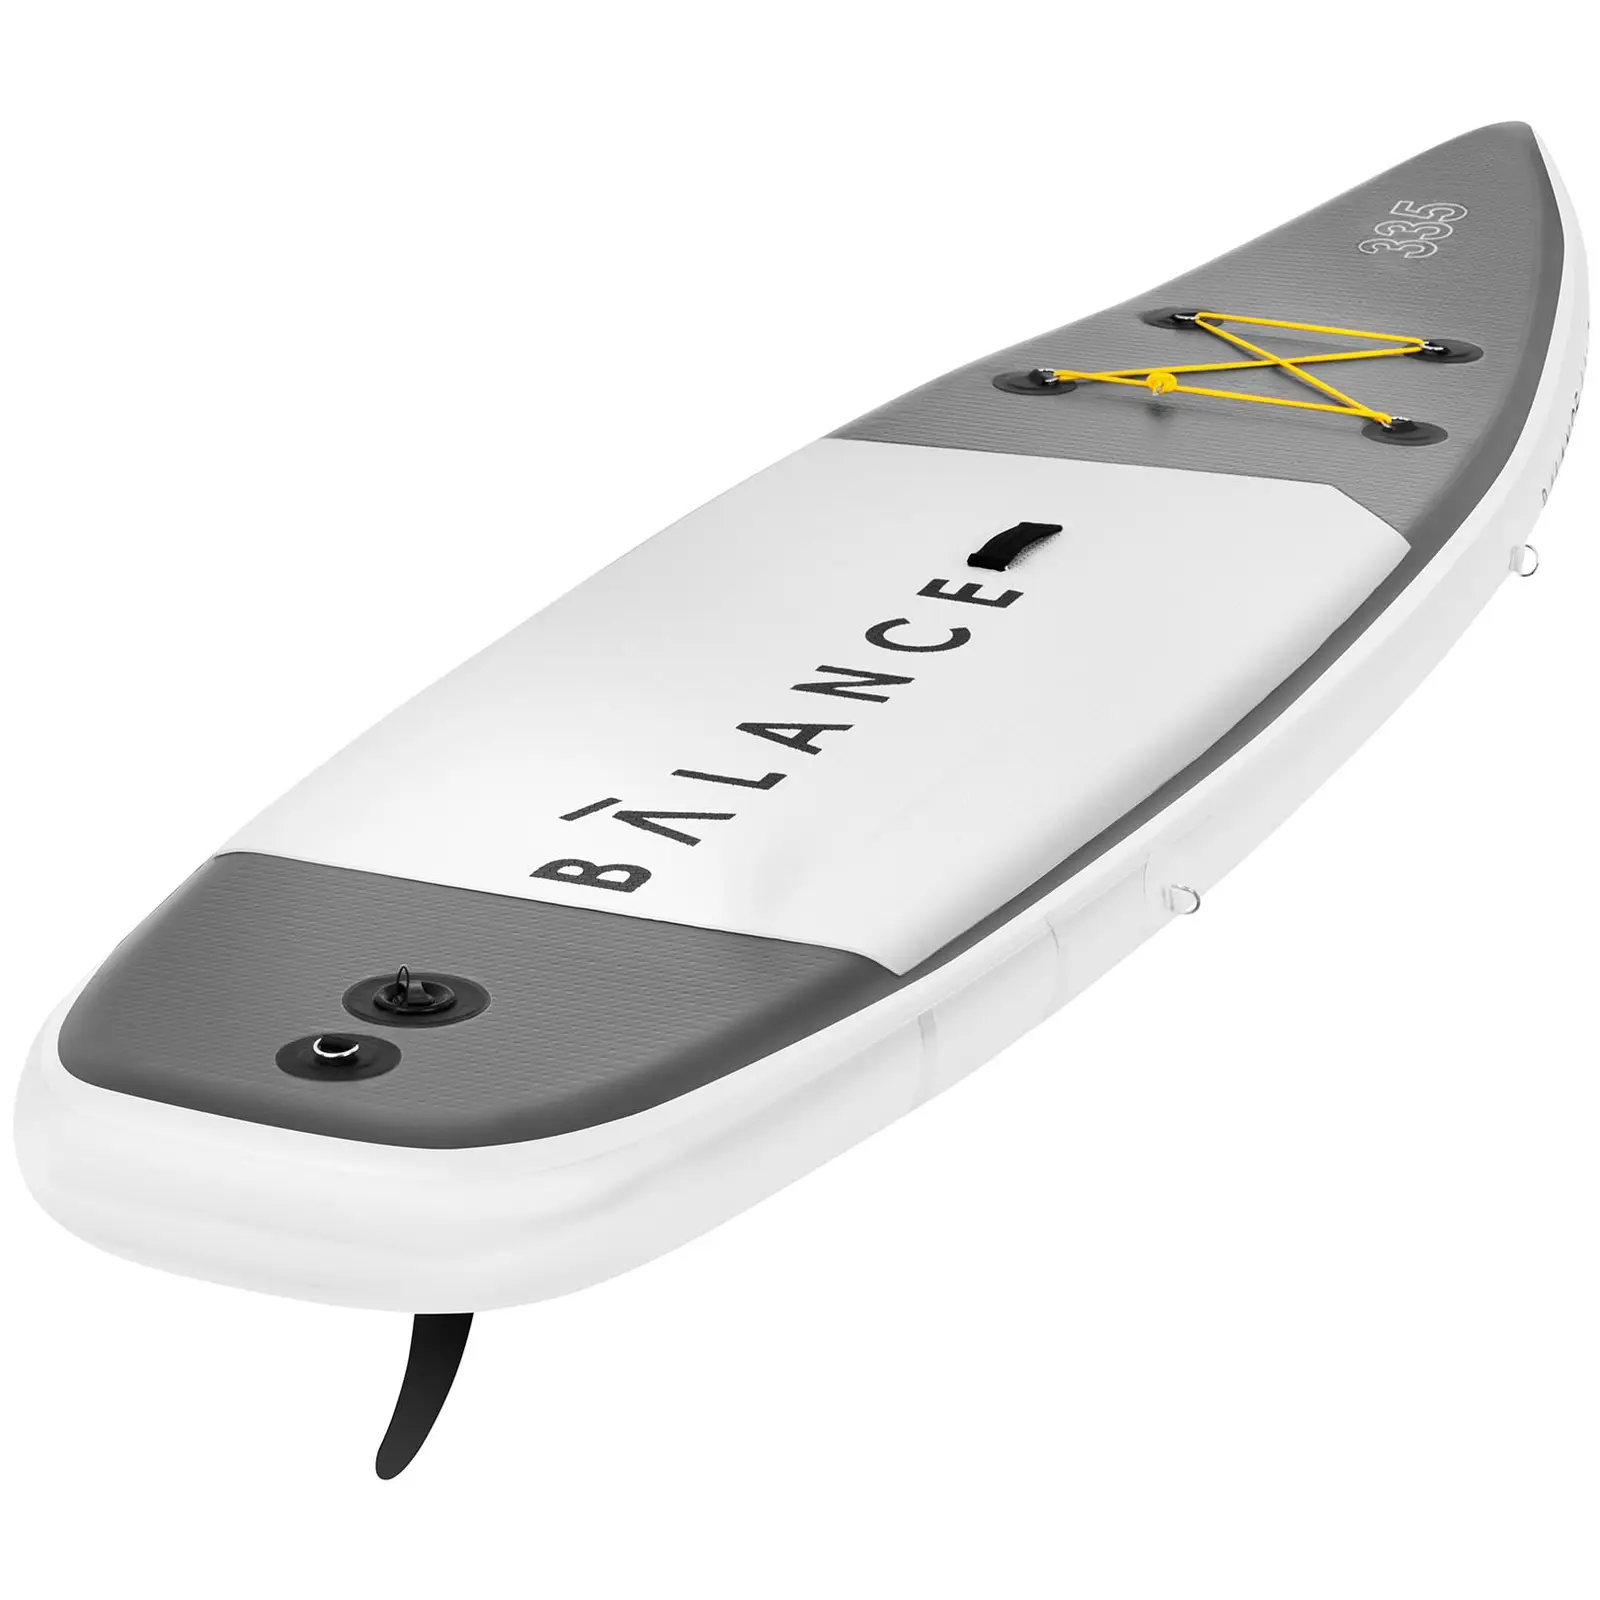 Paddle-board - 145 kg - 335 x 71 x 15 cm